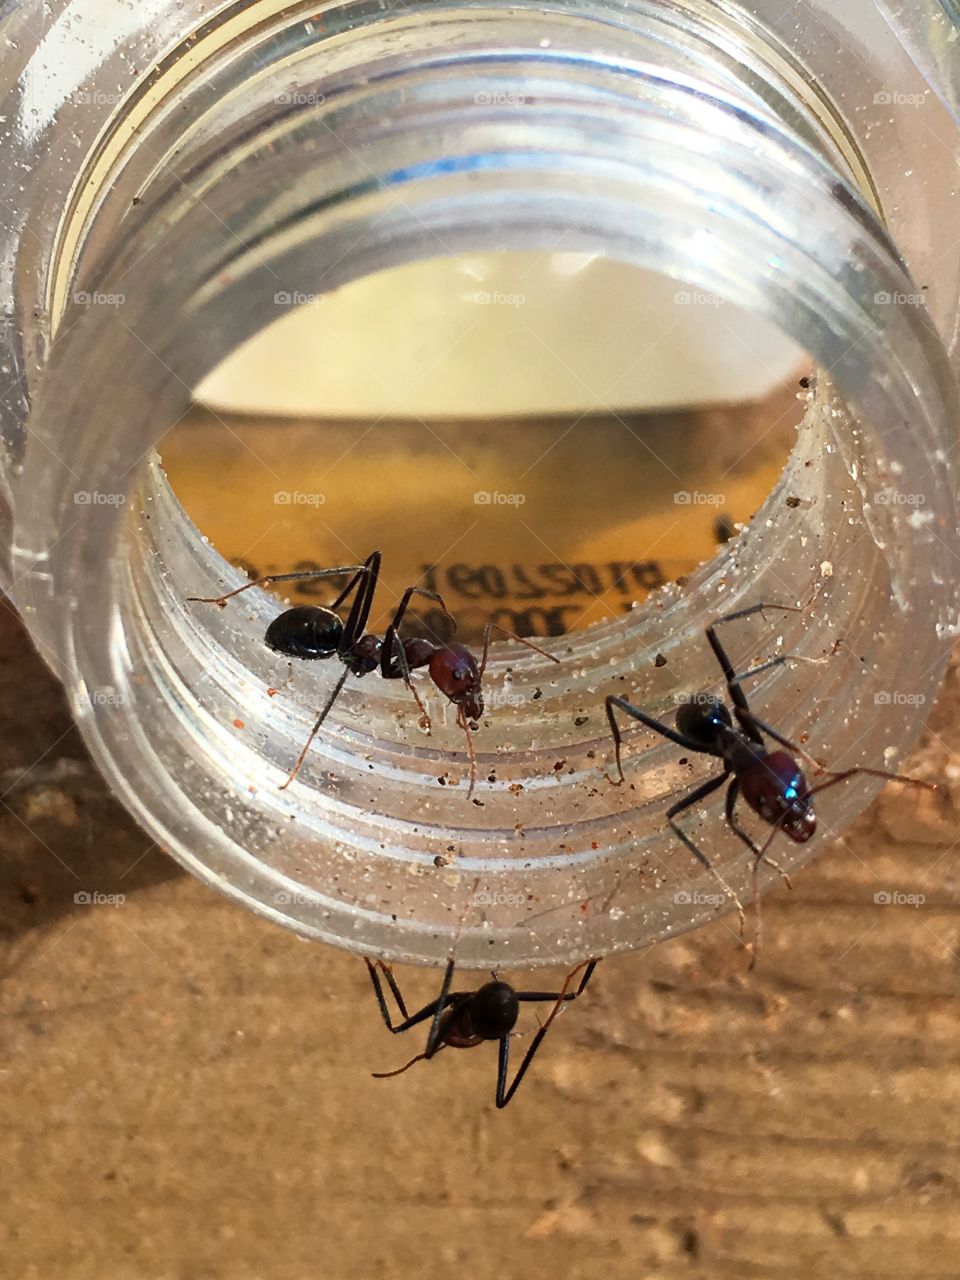 Three worker ants on rim of glass jar 